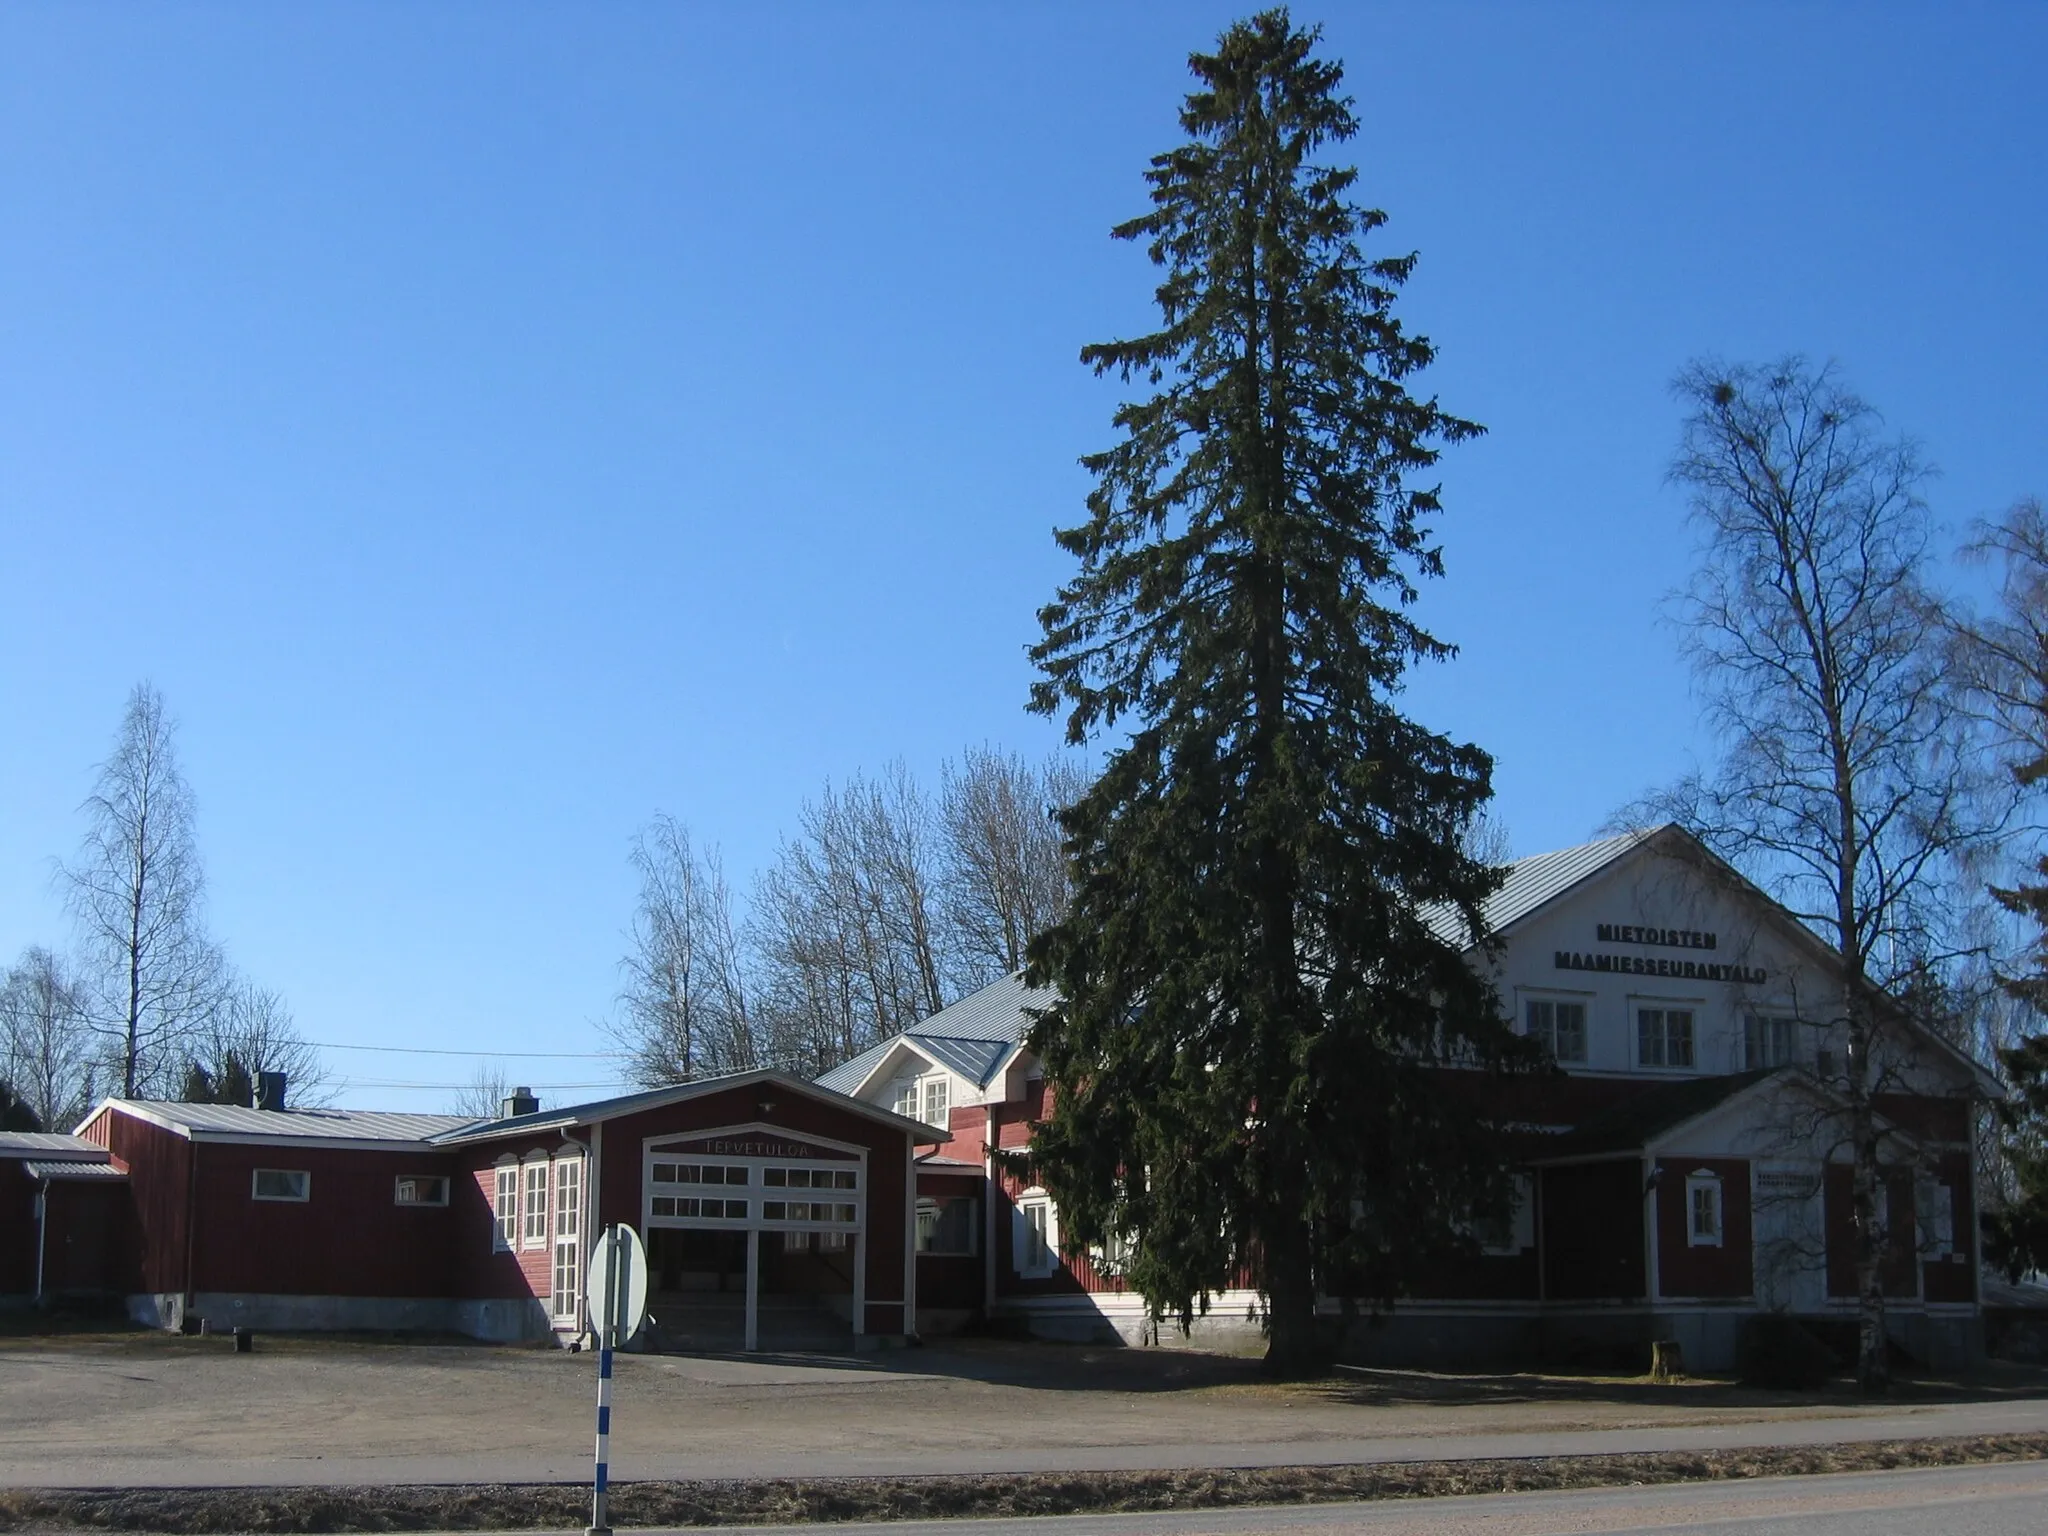 Photo showing: Mietoisten maamiesseurantalo building in Mietoinen, Finland